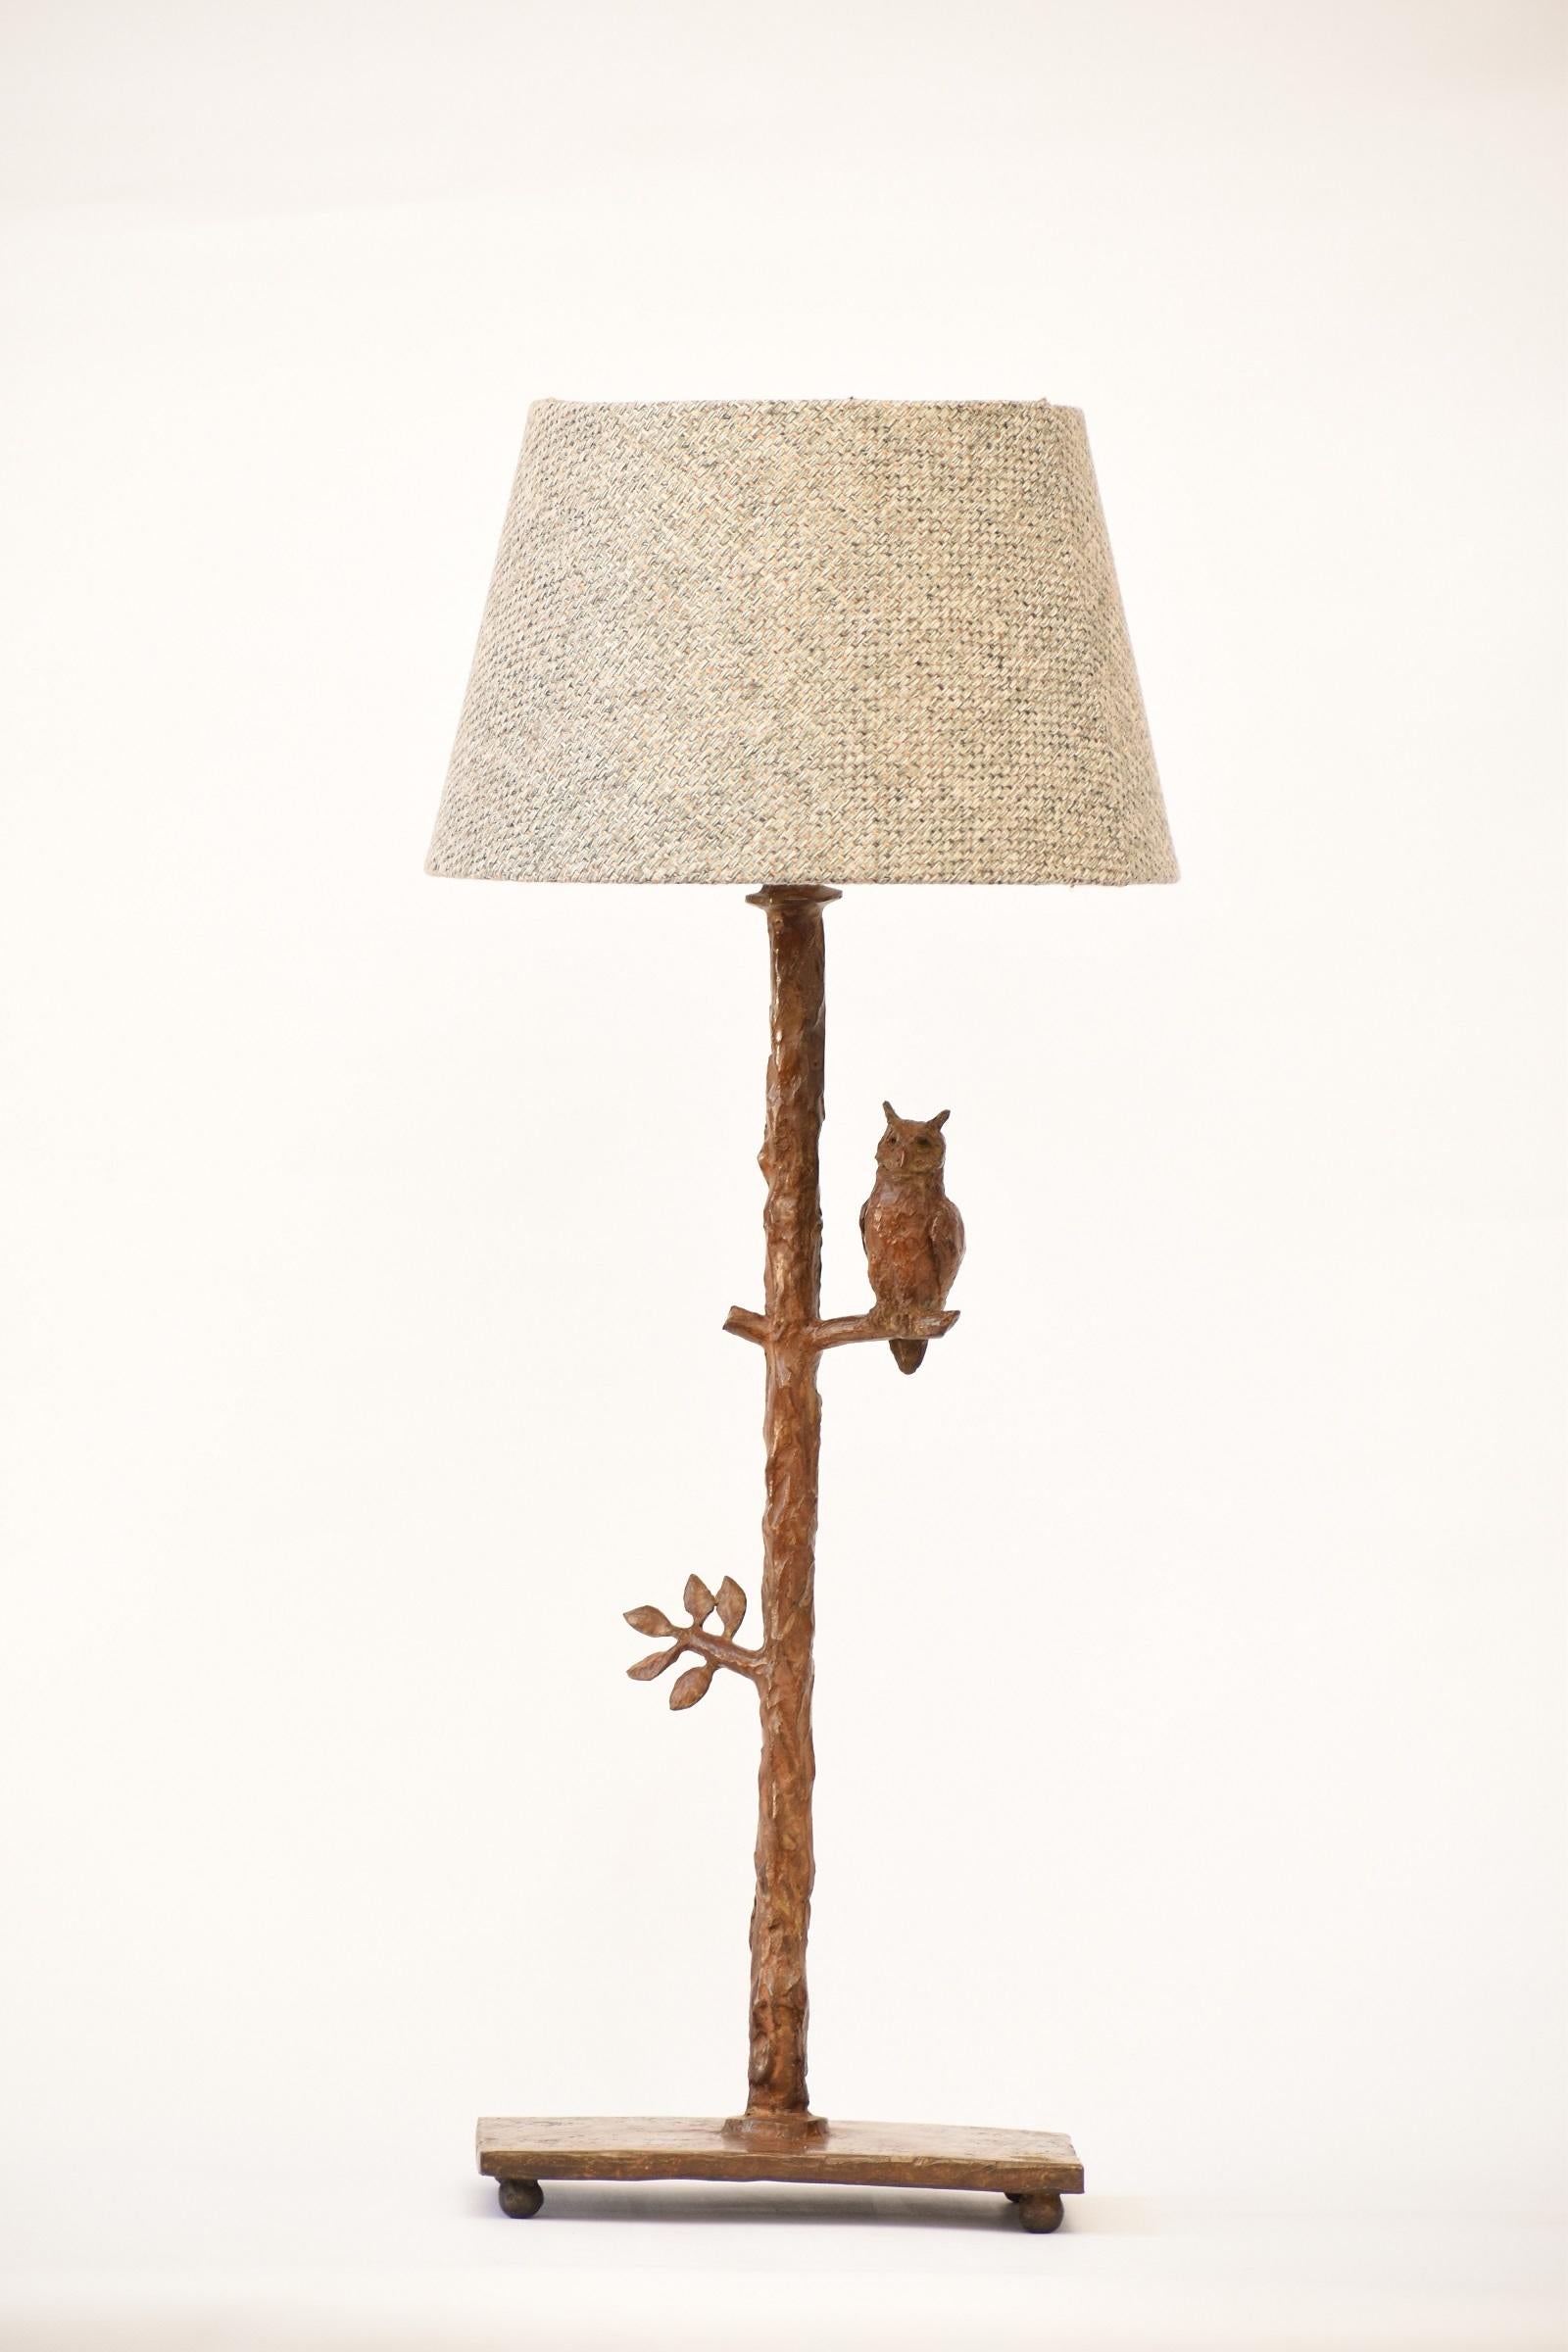 Lampe de table sculpturale fabriquée à la main, représentant un hibou et une feuille abstraite. En bronze coulé selon la méthode de la cire perdue. Fait à la main - sculpté, moulé, coulé et fini individuellement à la main, ce qui rend chaque pièce